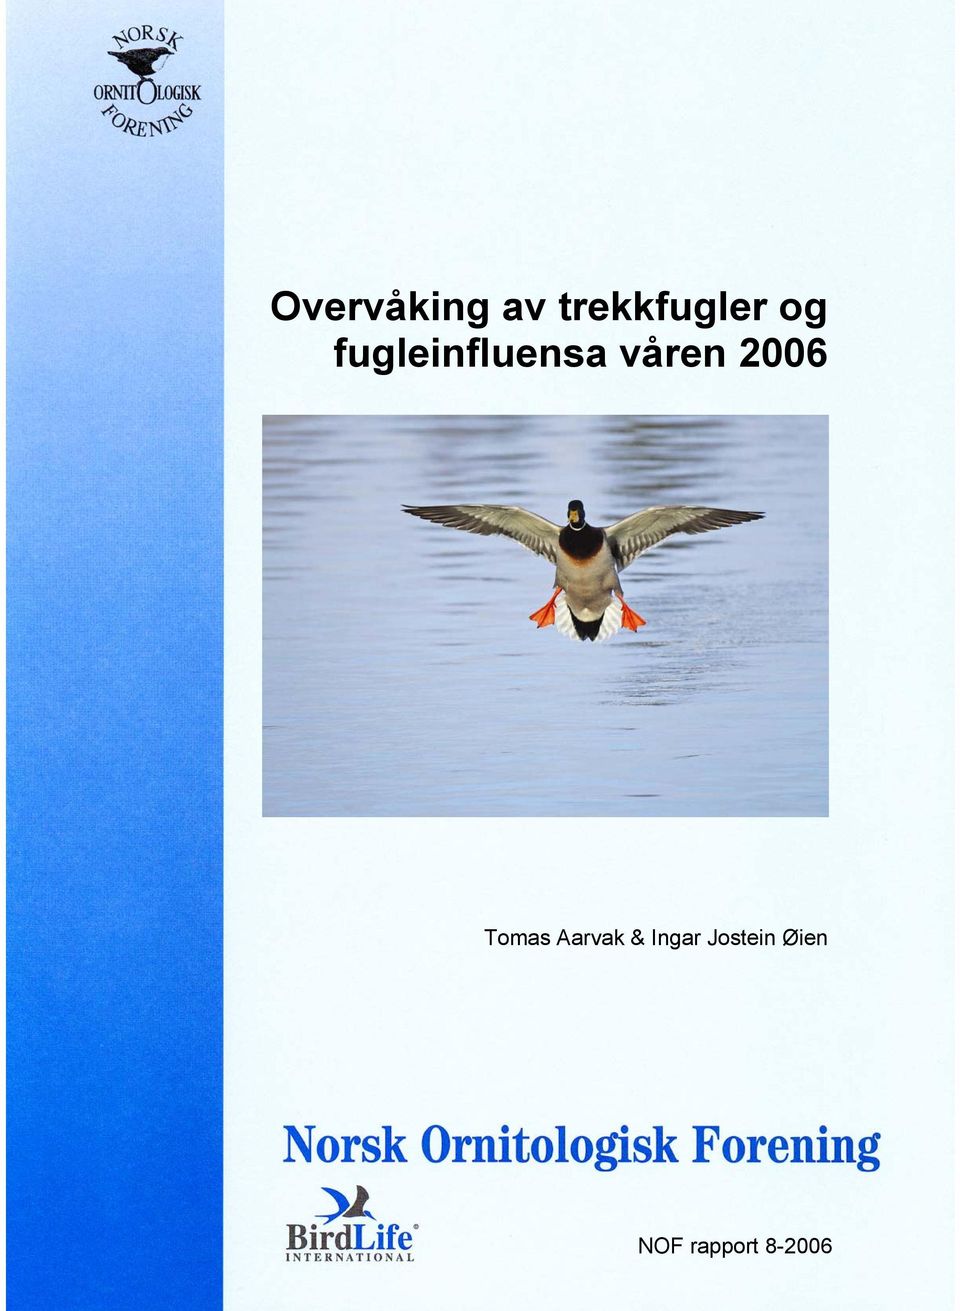 2006 Tomas Aarvak & Ingar